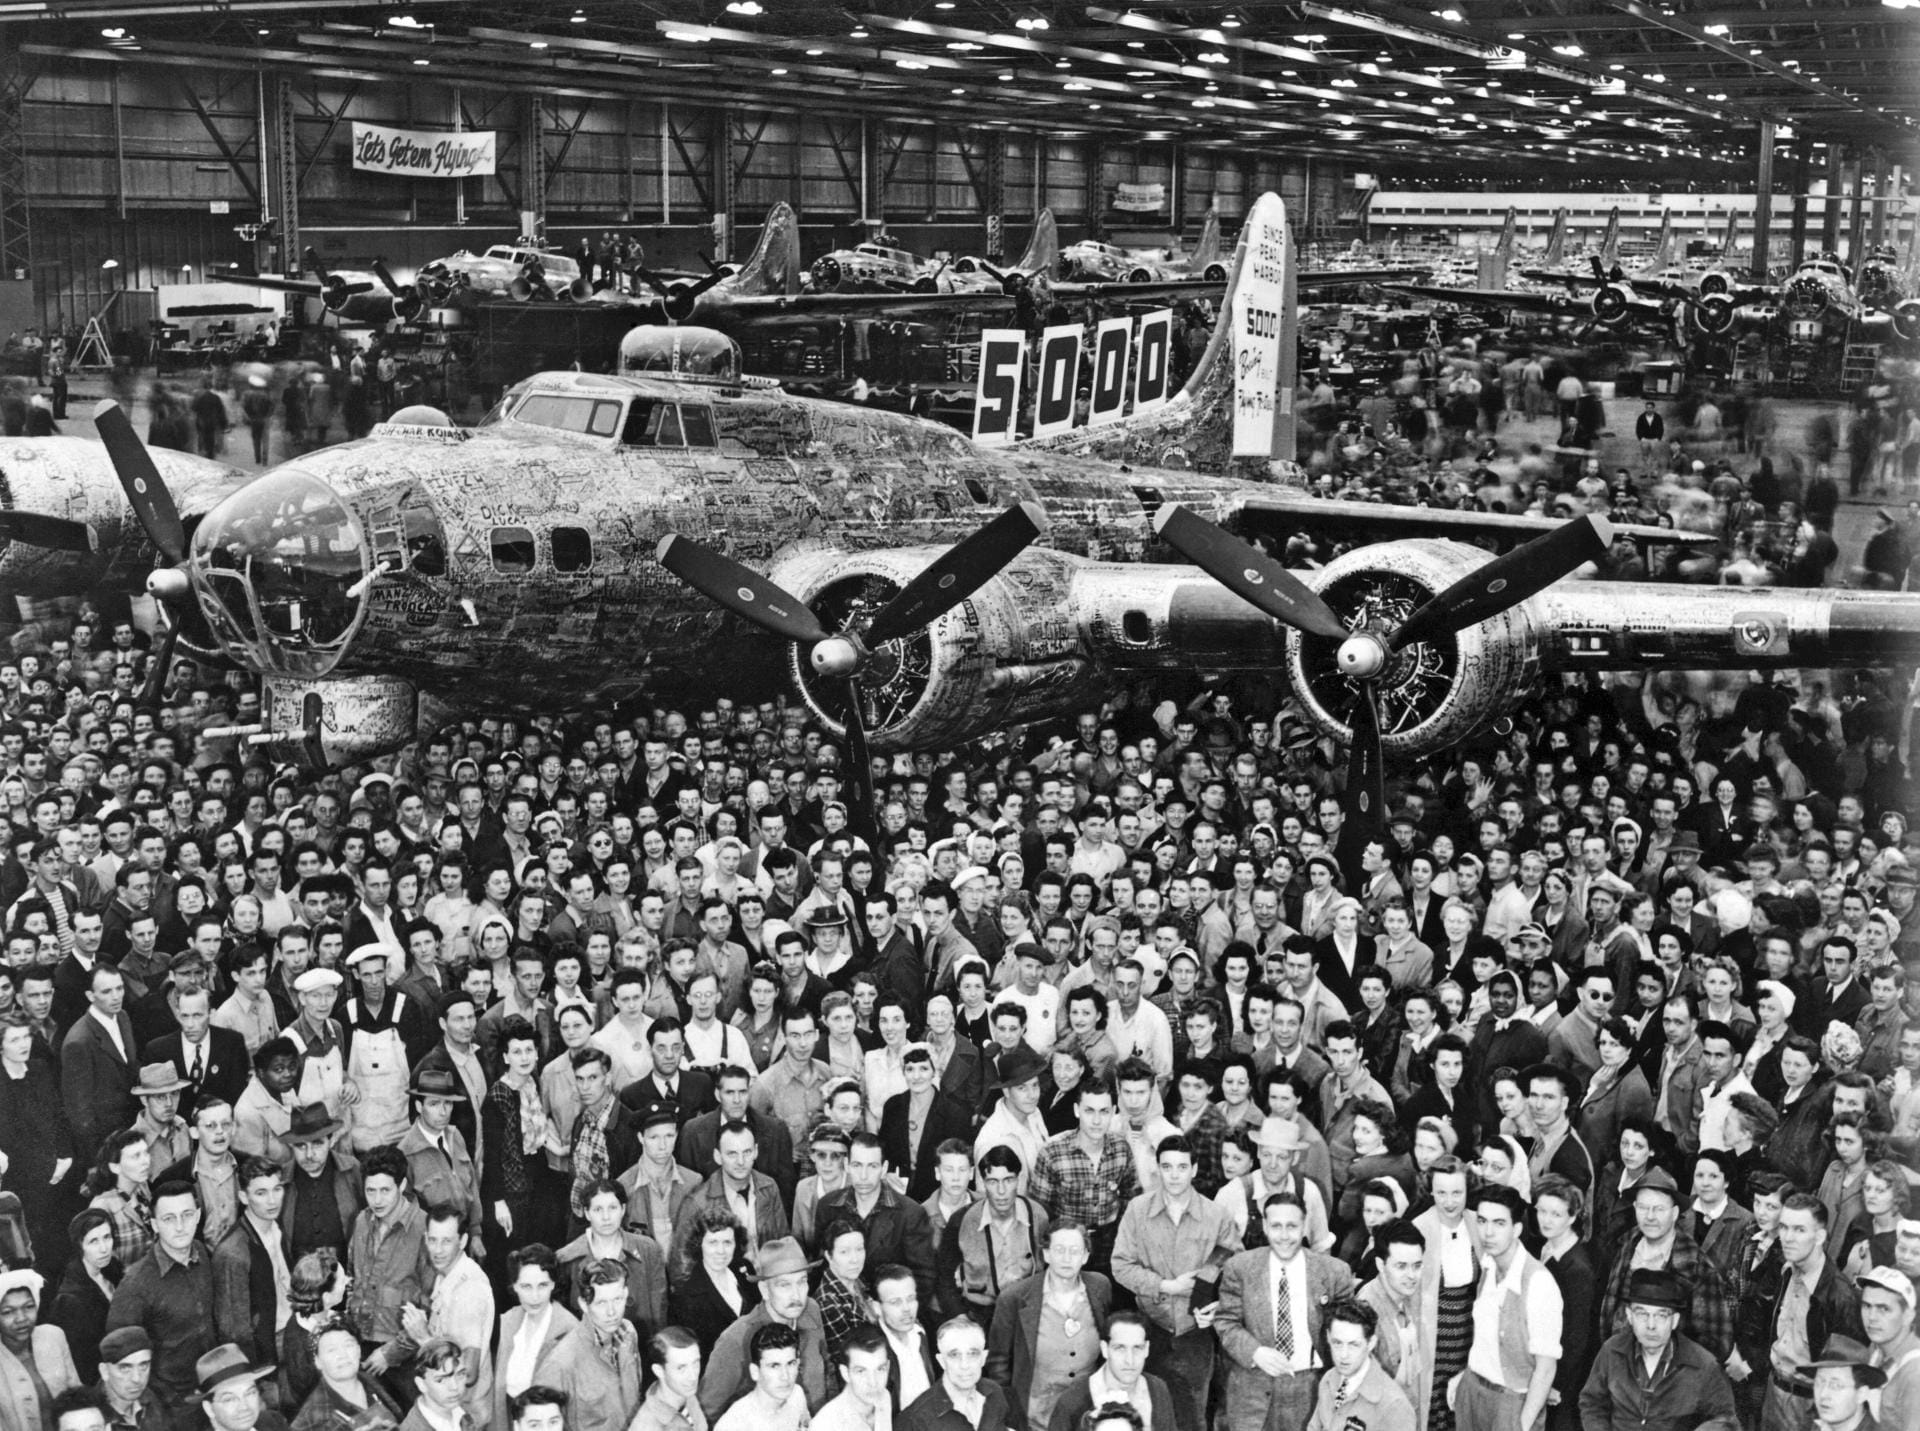 Vor allem Militärmaschinen trugen zum frühen Erfolg von Boeing bei, wie etwa die Boeing B-17 aus den 40-er-Jahren.